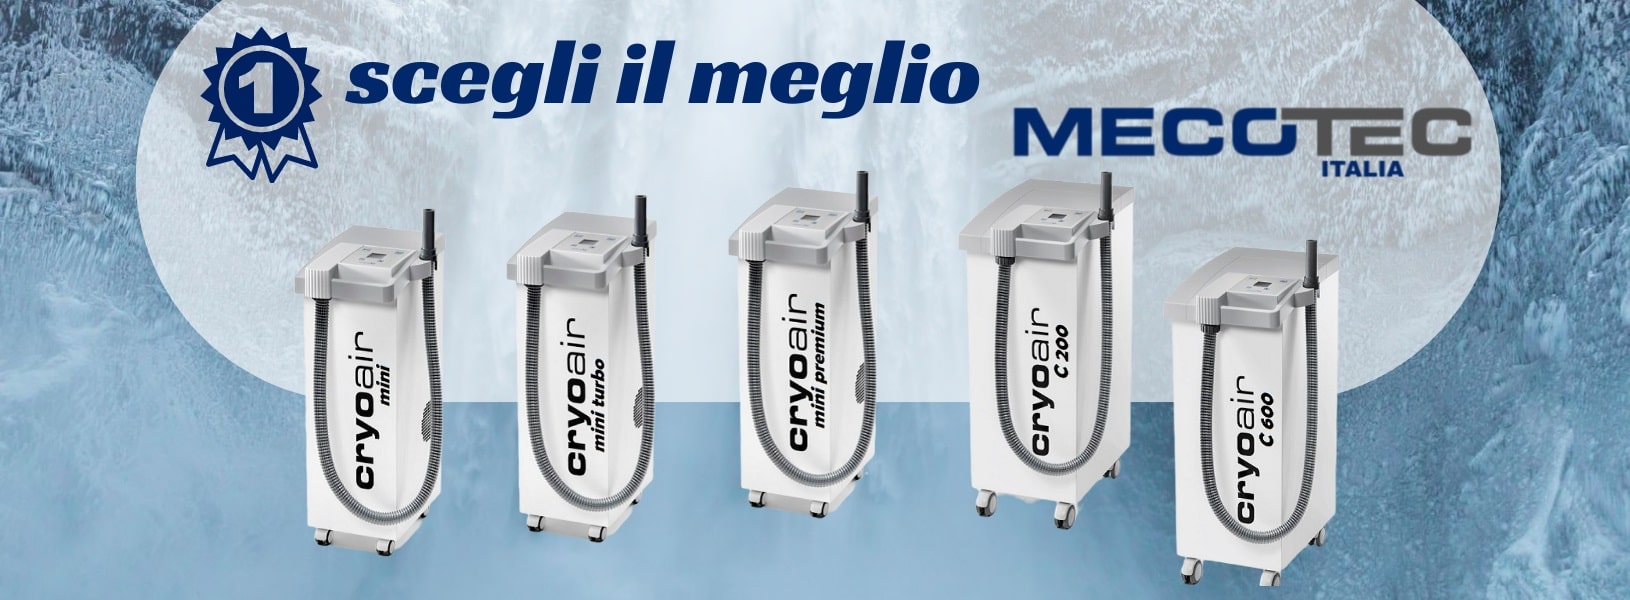 Crioterapia localizzata unita dispositivi Elettrici Mecotec Italia